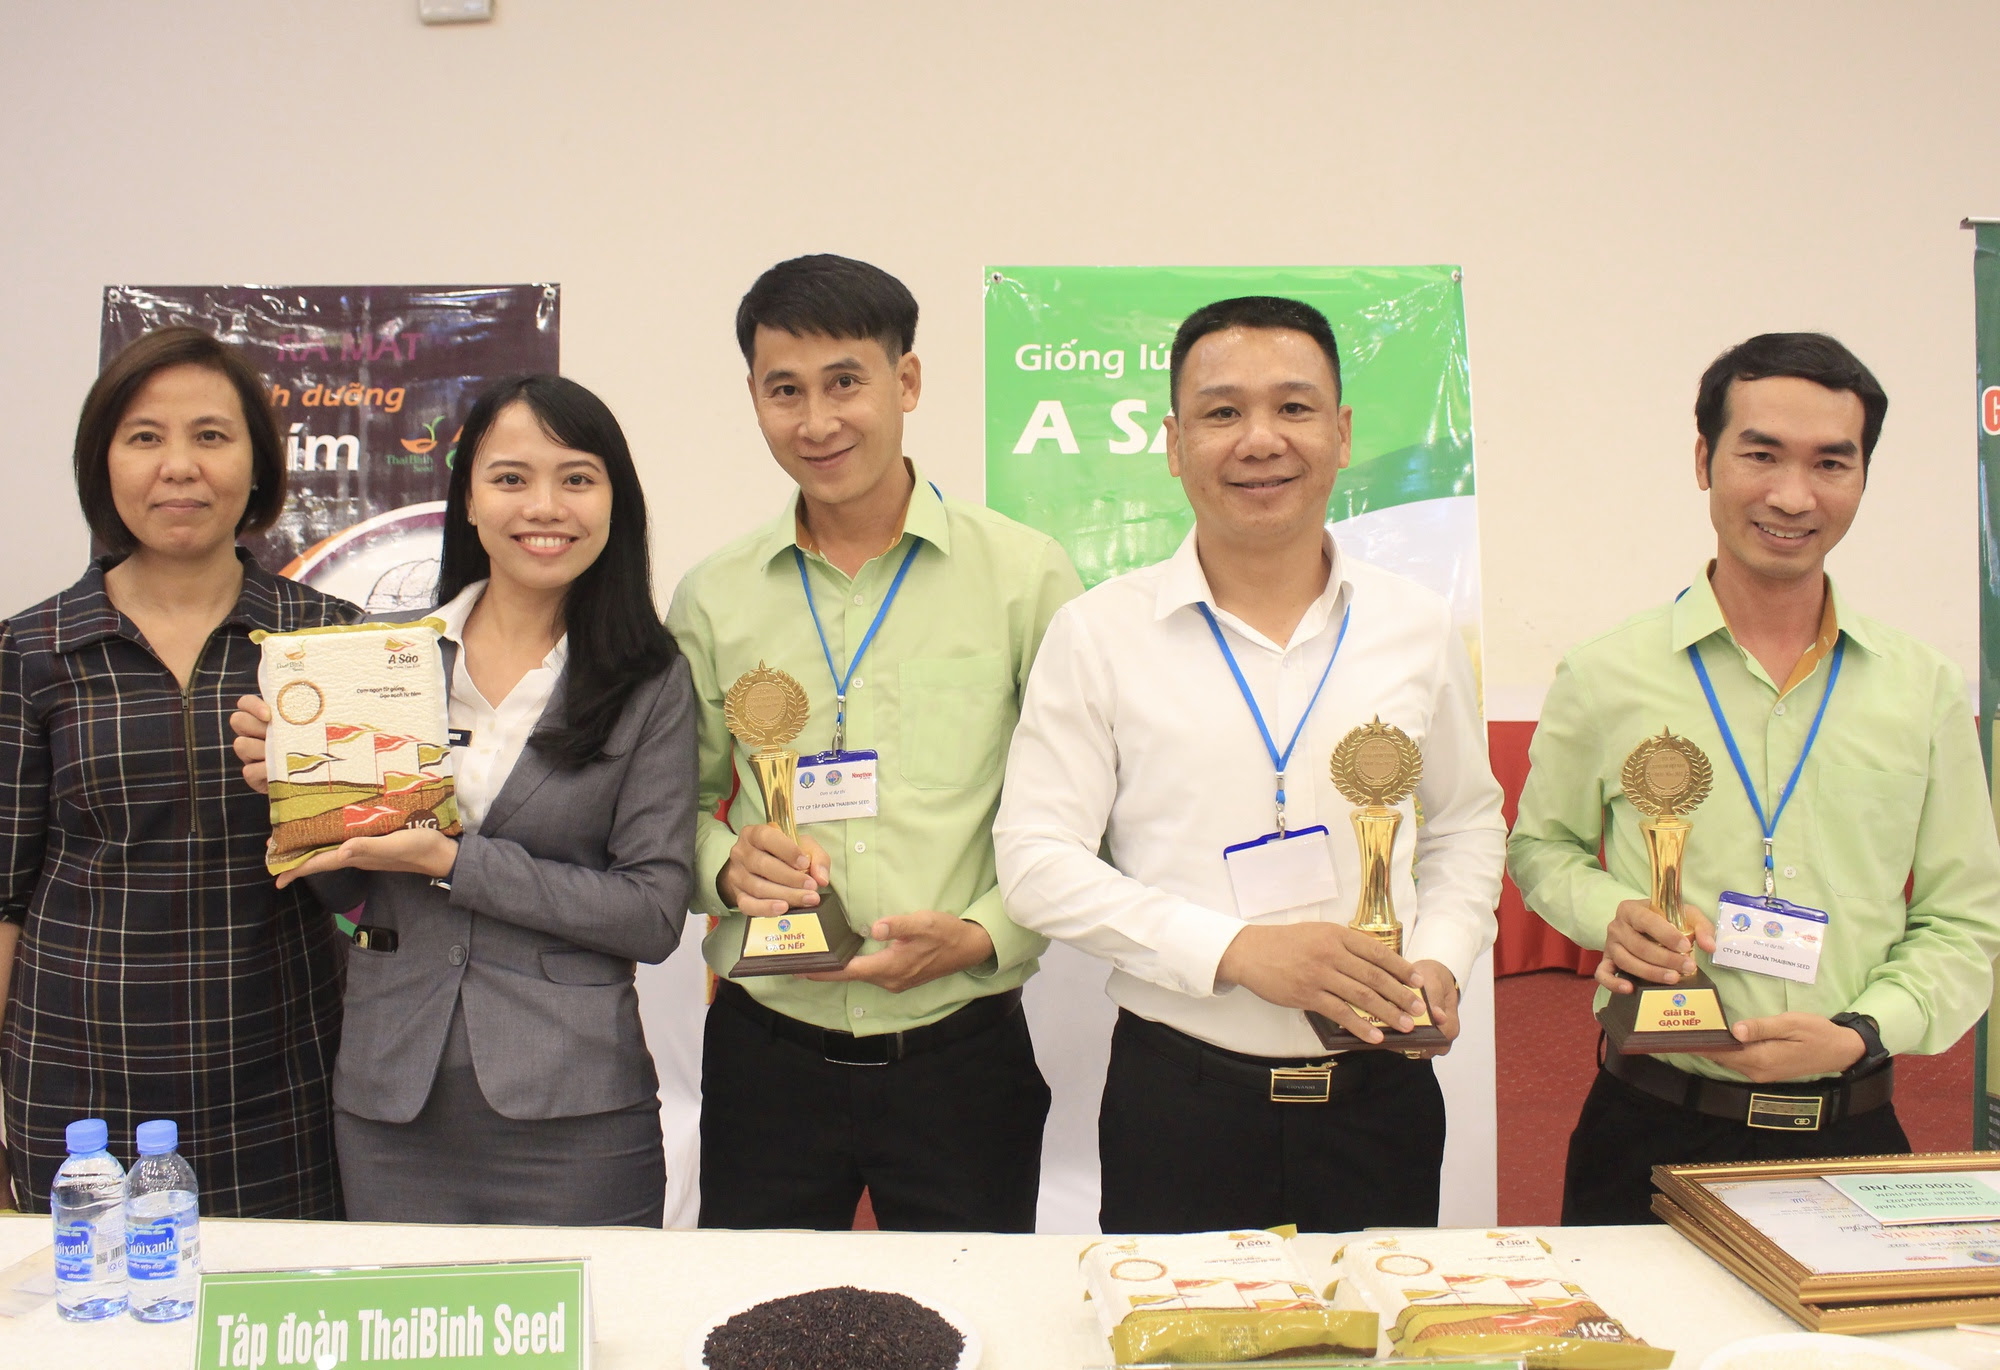 Xuất hiện loại gạo mới vượt ST24, giành giải Nhất cuộc thi Gạo ngon Việt Nam - Ảnh 1.